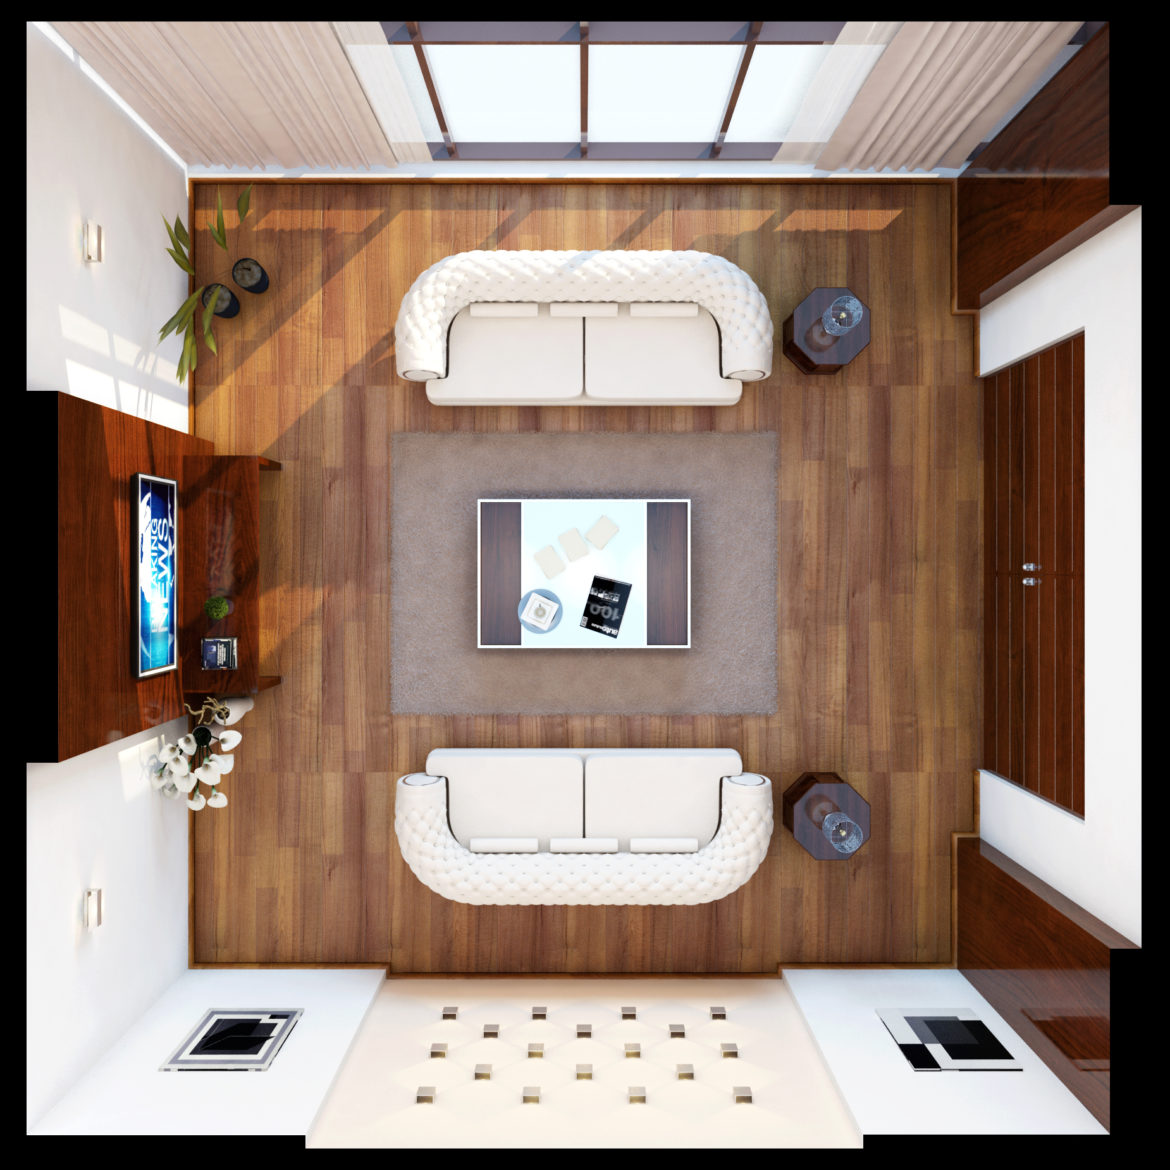 interior_01_living room 3d model max 293774